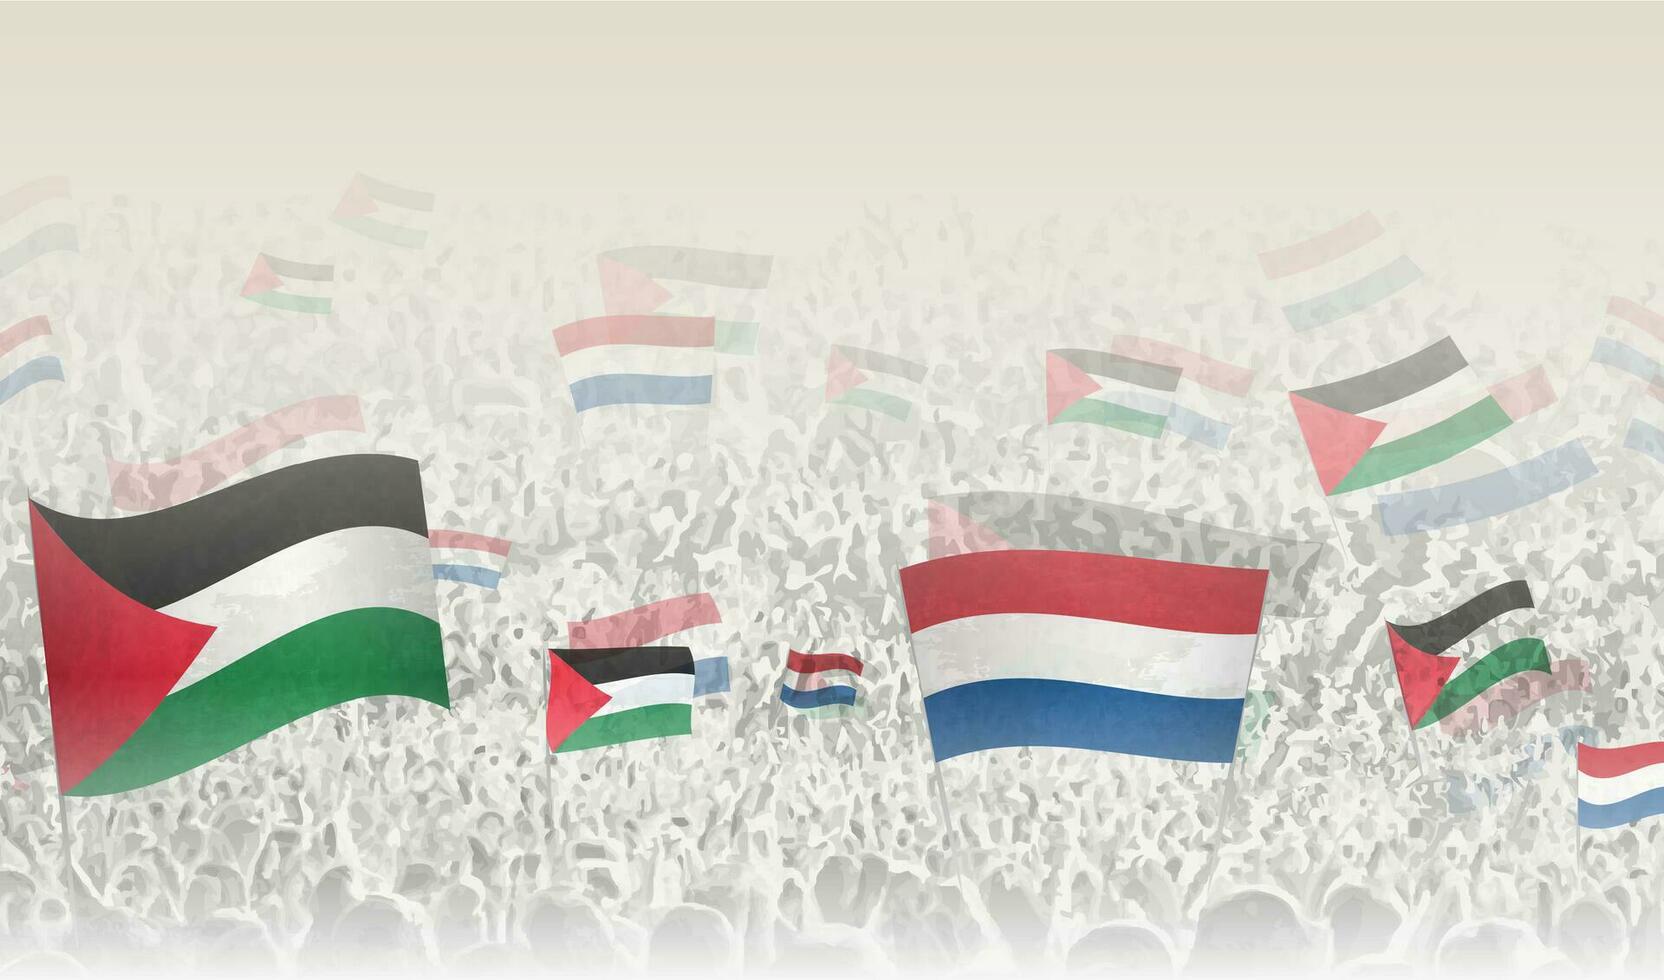 Palestine et Pays-Bas drapeaux dans une foule de applaudissement personnes. vecteur